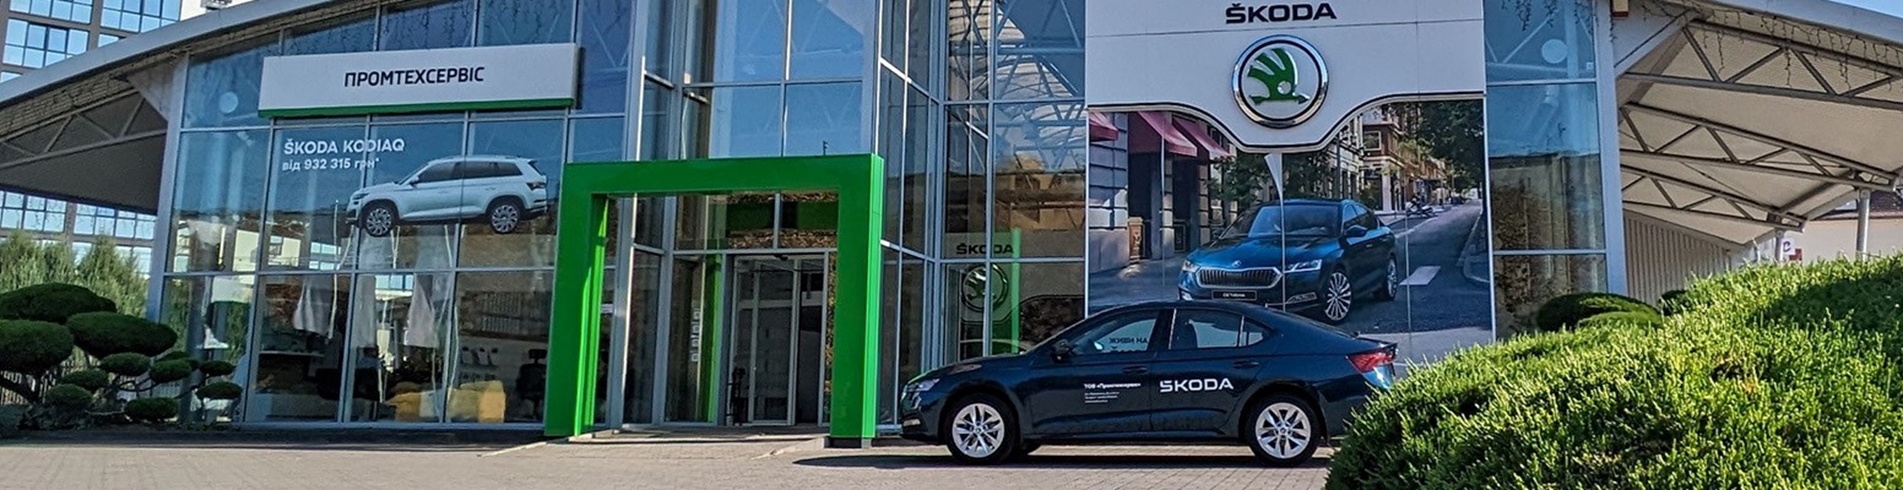 Офіційний дилер Škoda у Луцьку святкує 20-річний ювілей